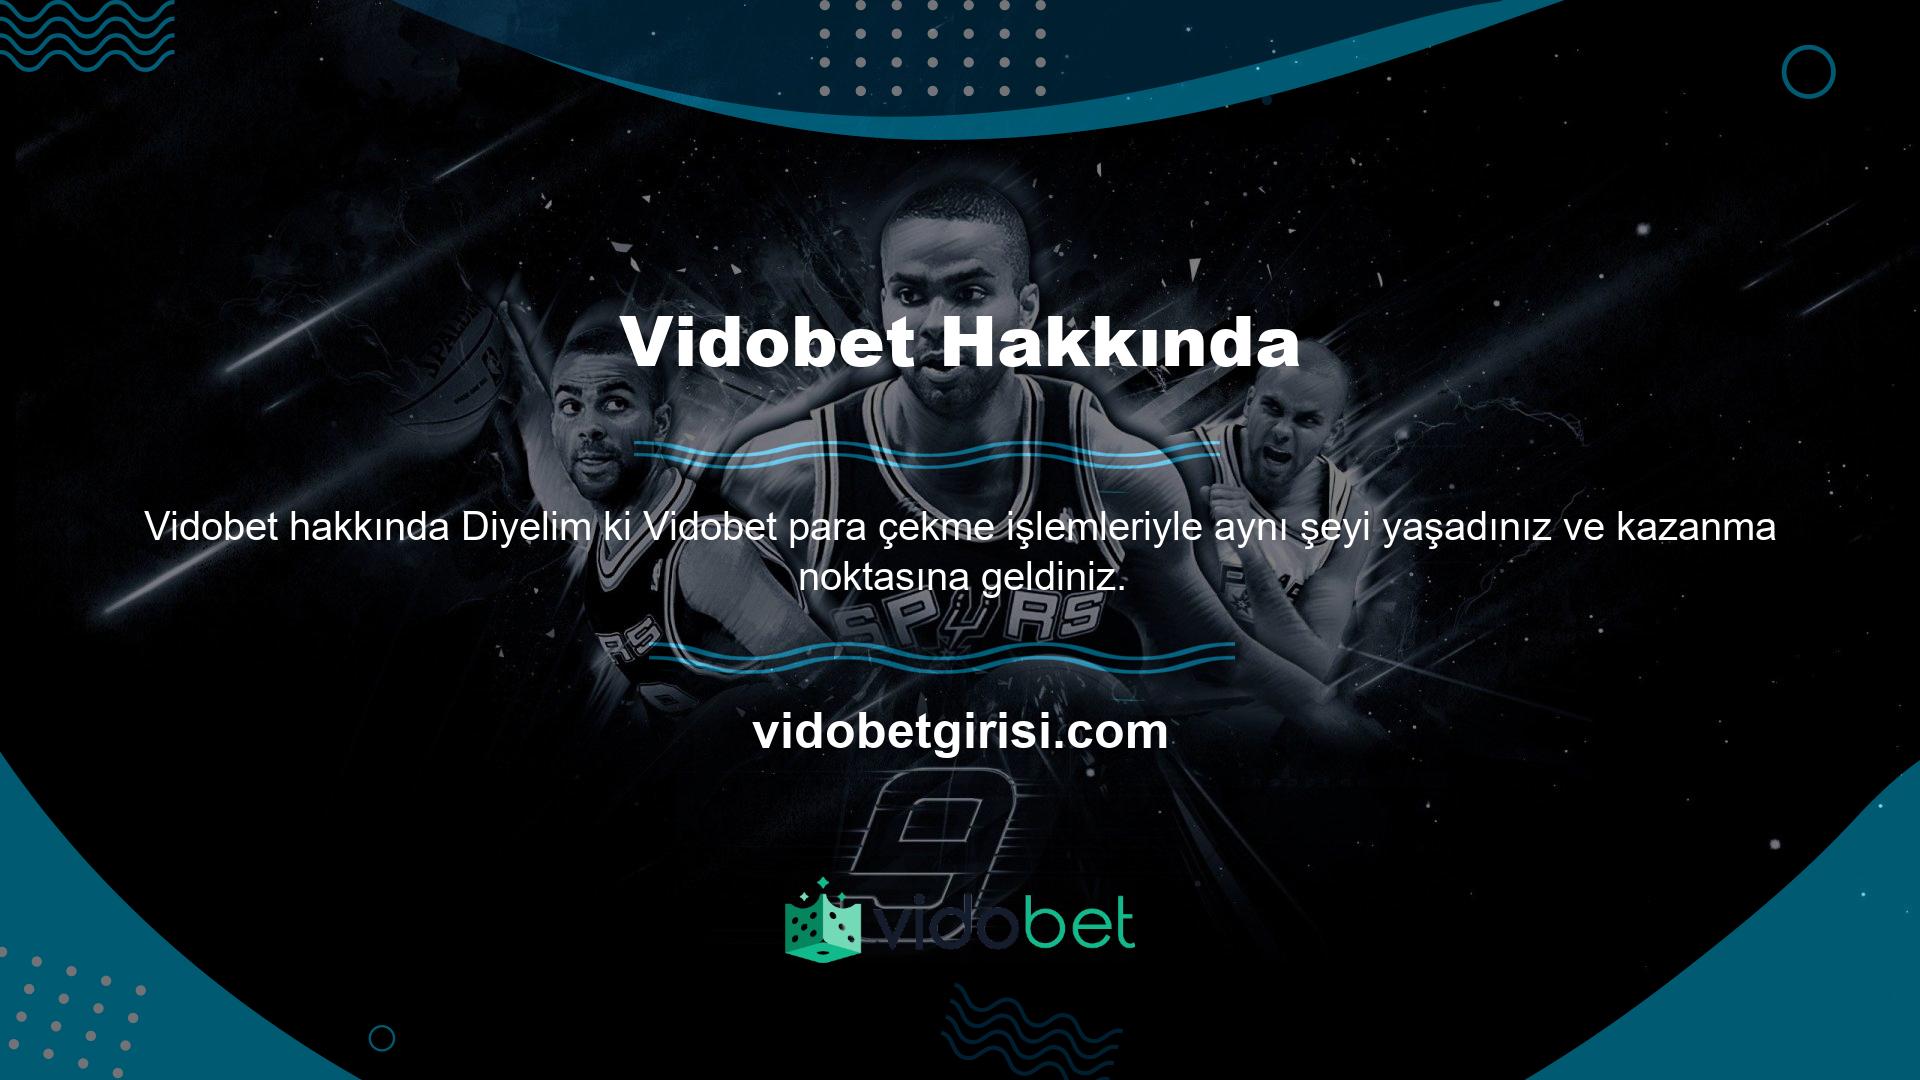 Para kazanmak söz konusu olduğunda Vidobet üyelerinin akıllarındaki tek soru, Vidobet para çekmenin en hızlı yolunun ne olduğudur